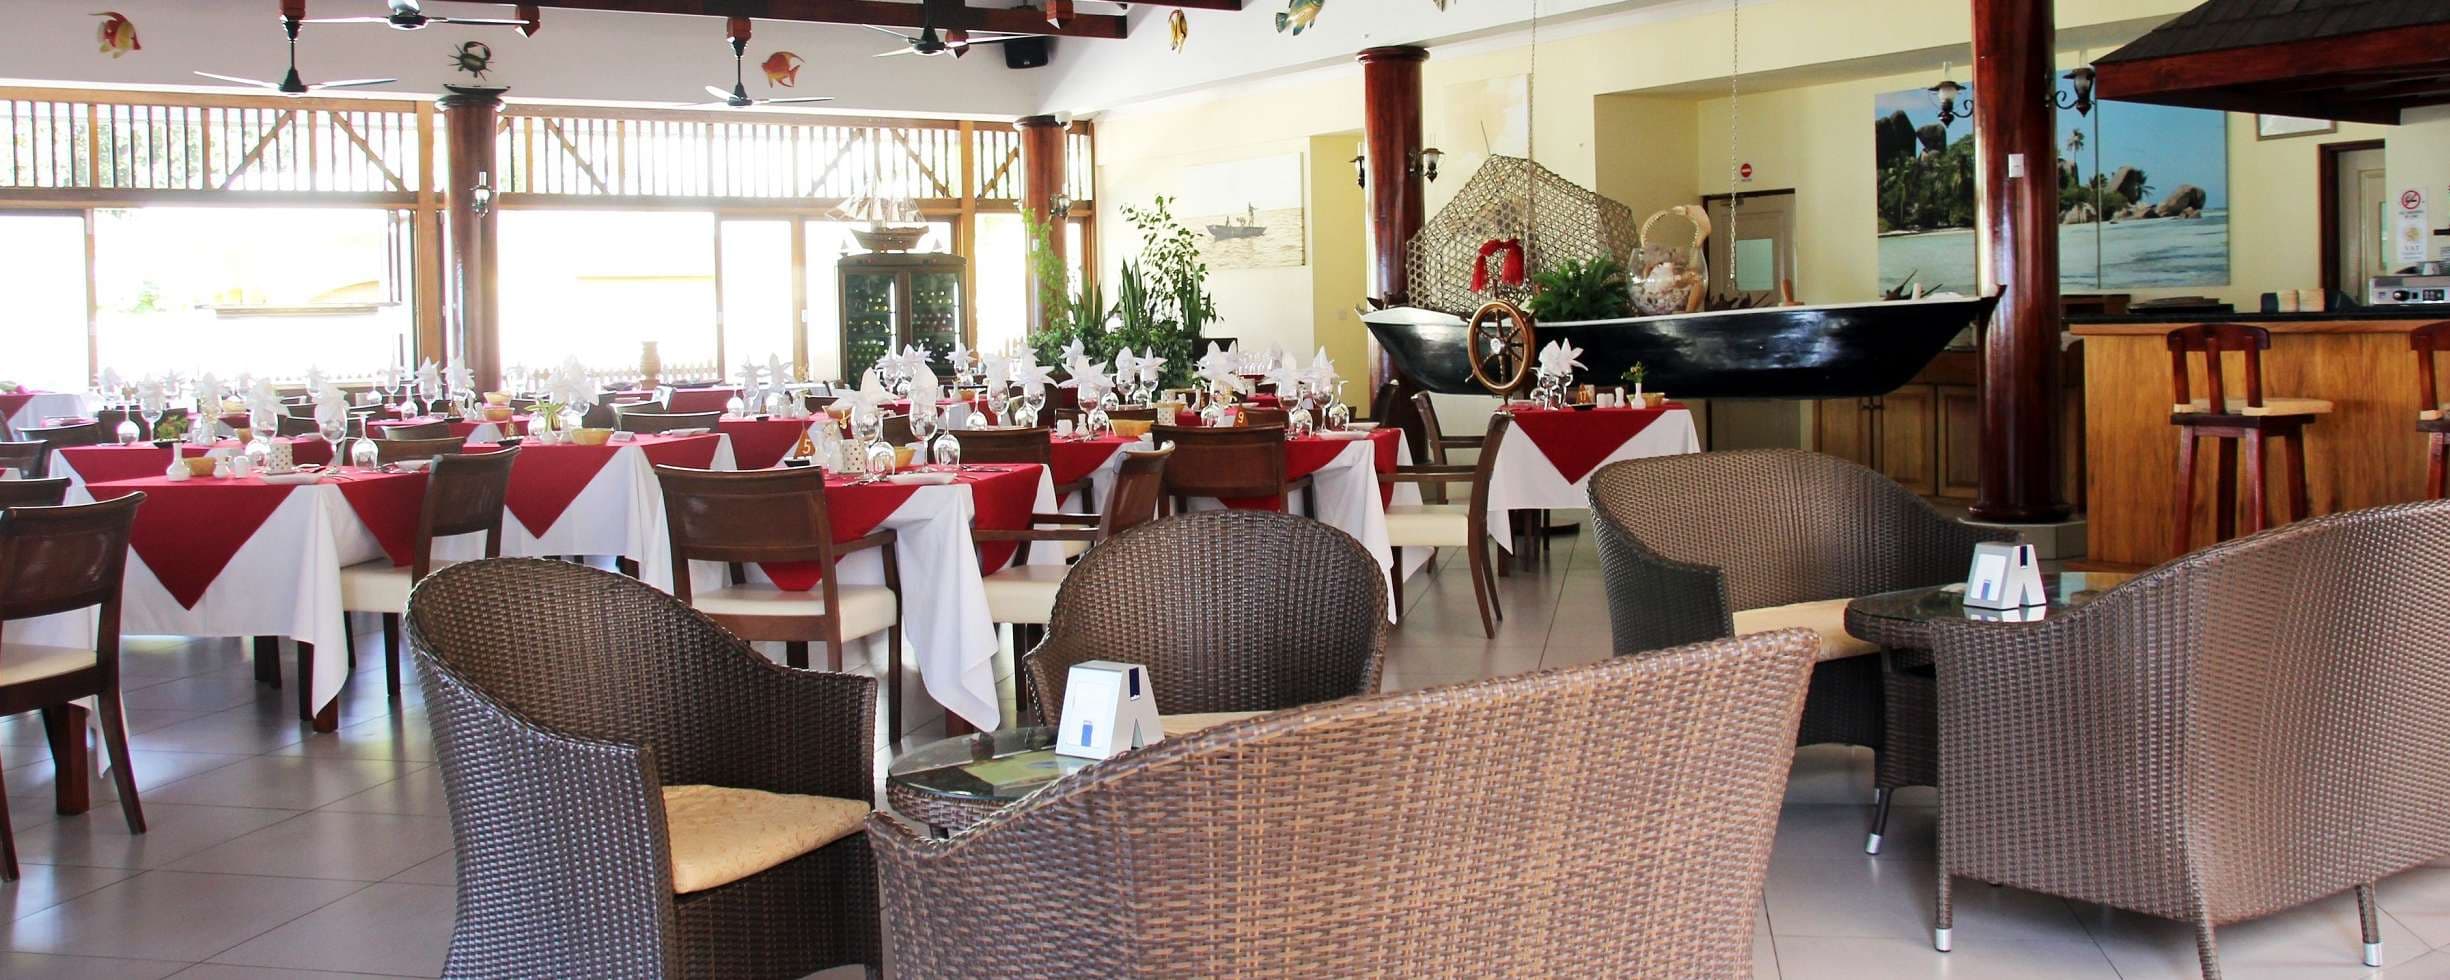 Pirogue Restaurant & Bar